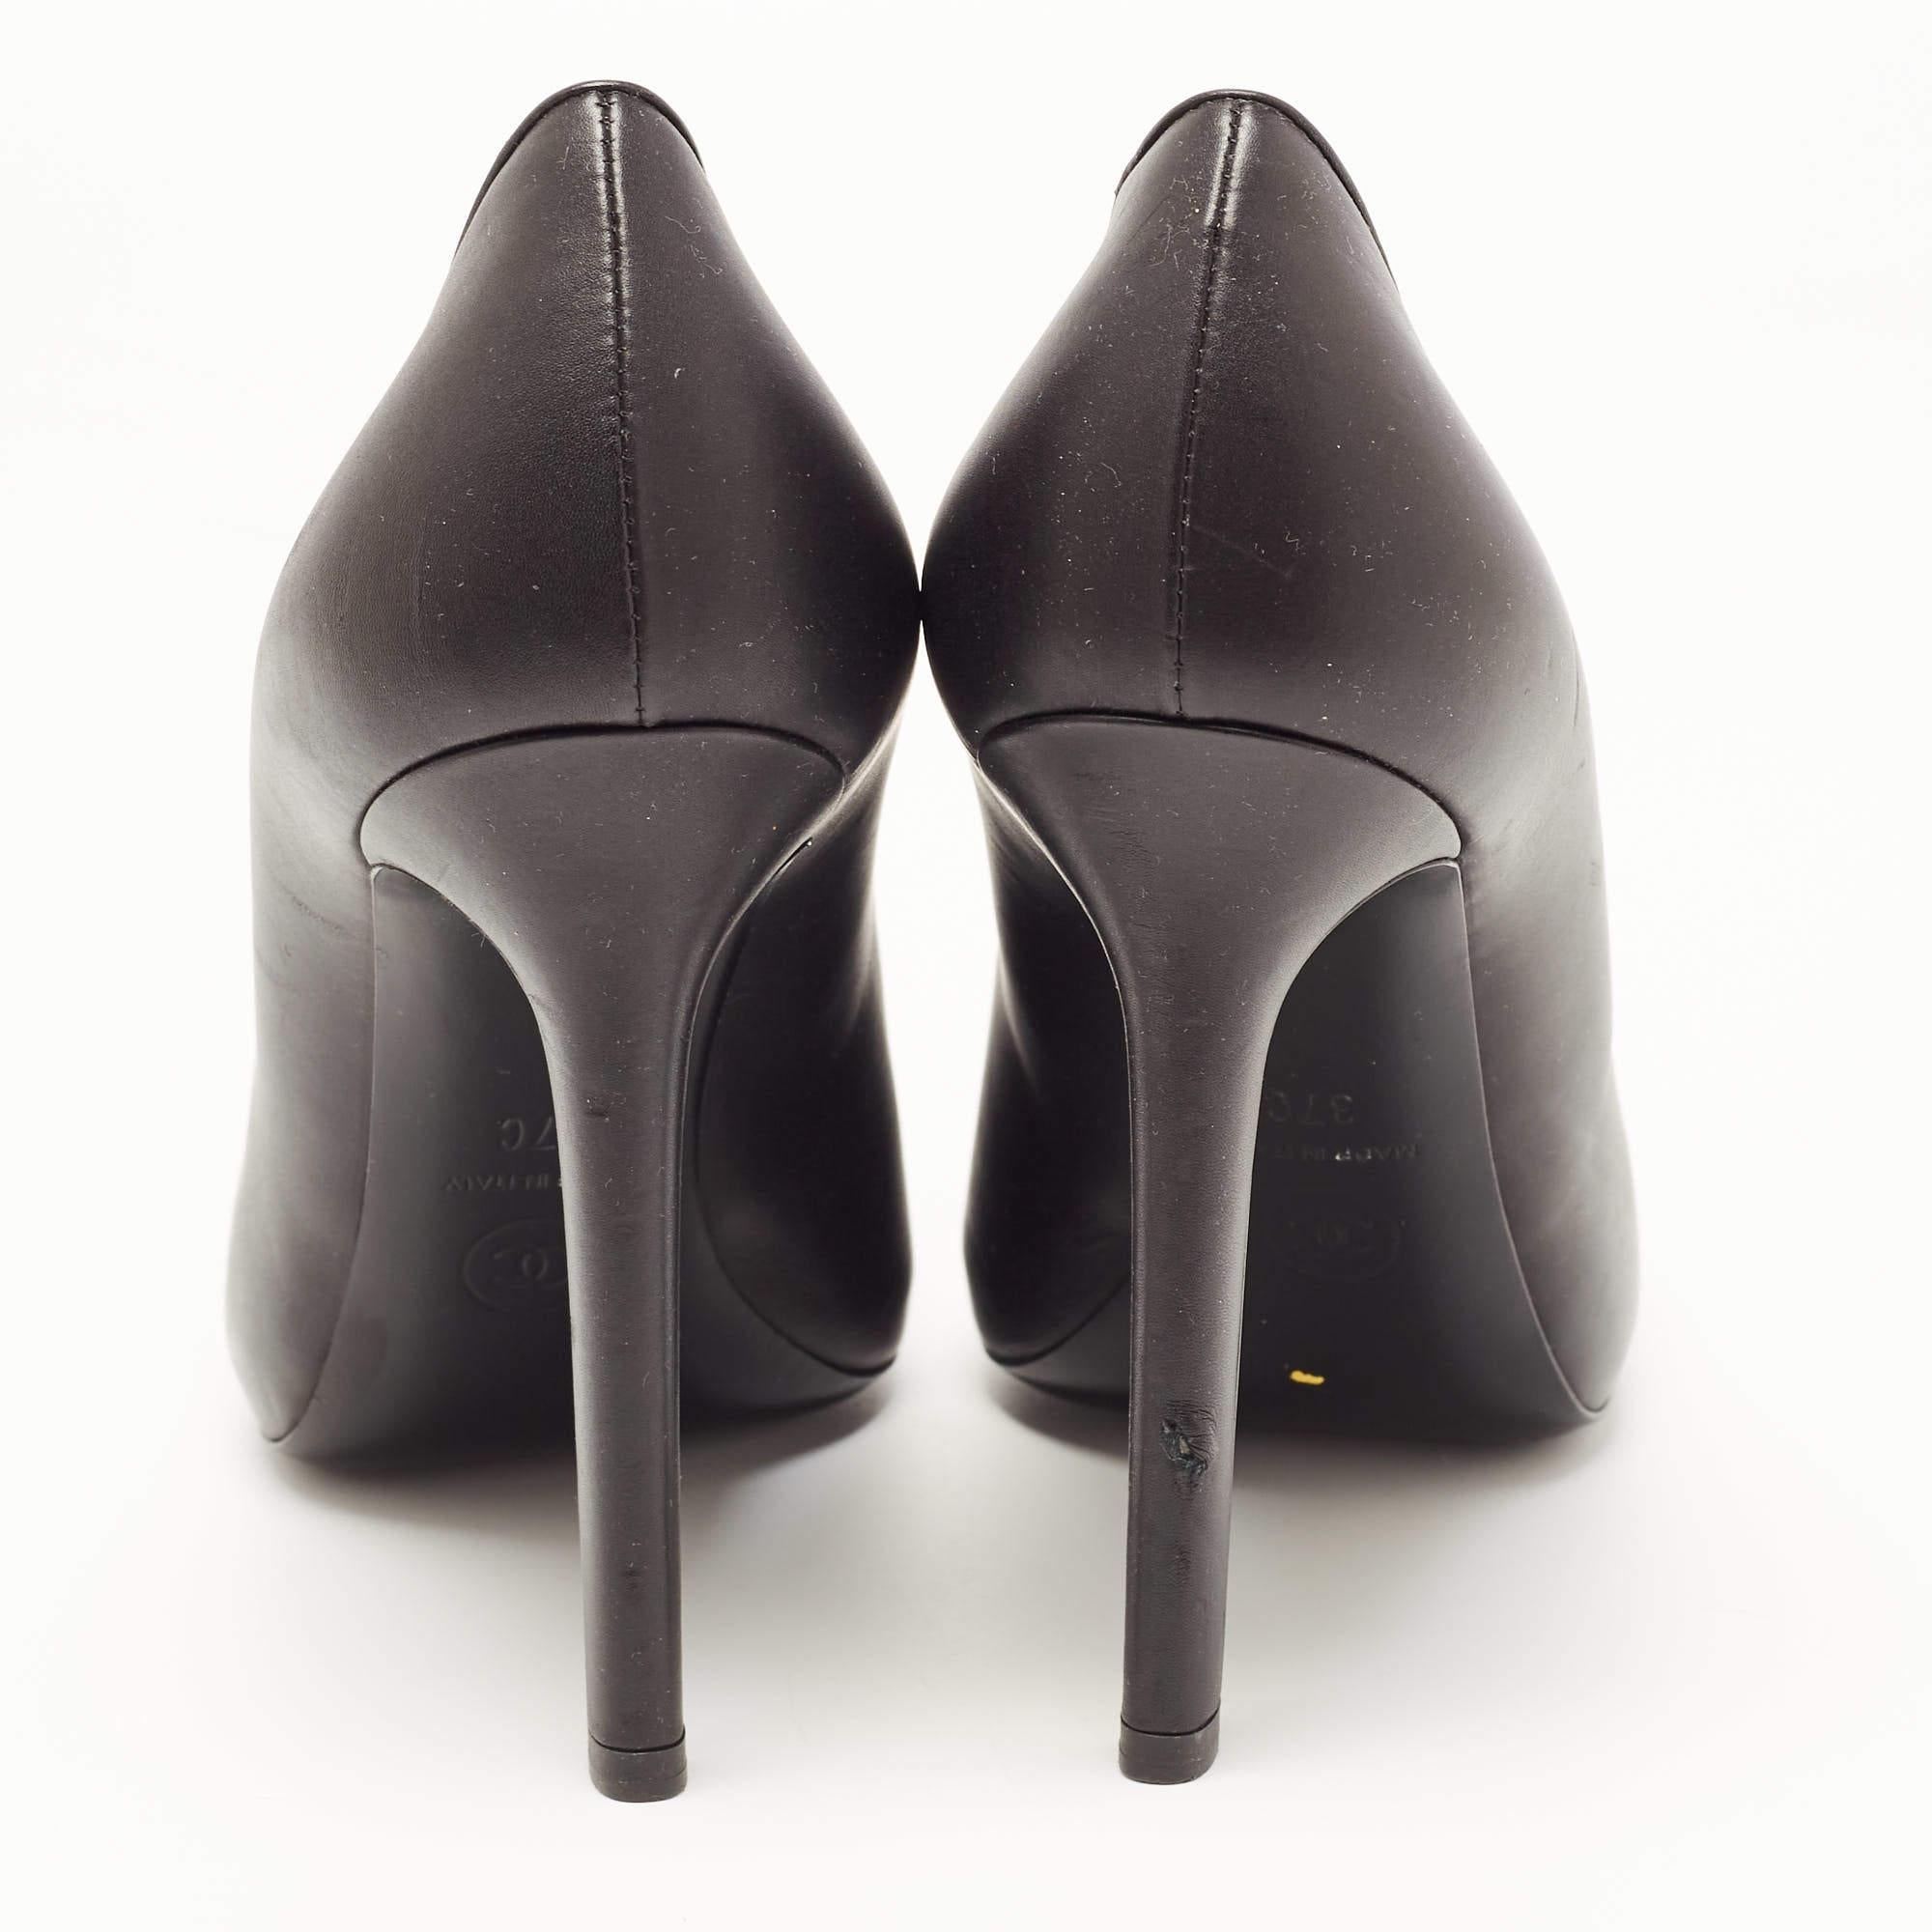 Zeigen Sie einen eleganten Stil mit diesem Paar Pumps. Diese schwarzen Chanel Schuhe für Damen sind aus hochwertigen MATERIALEN gefertigt. Sie sind auf robusten Sohlen und schlanken Absätzen aufgebaut.

